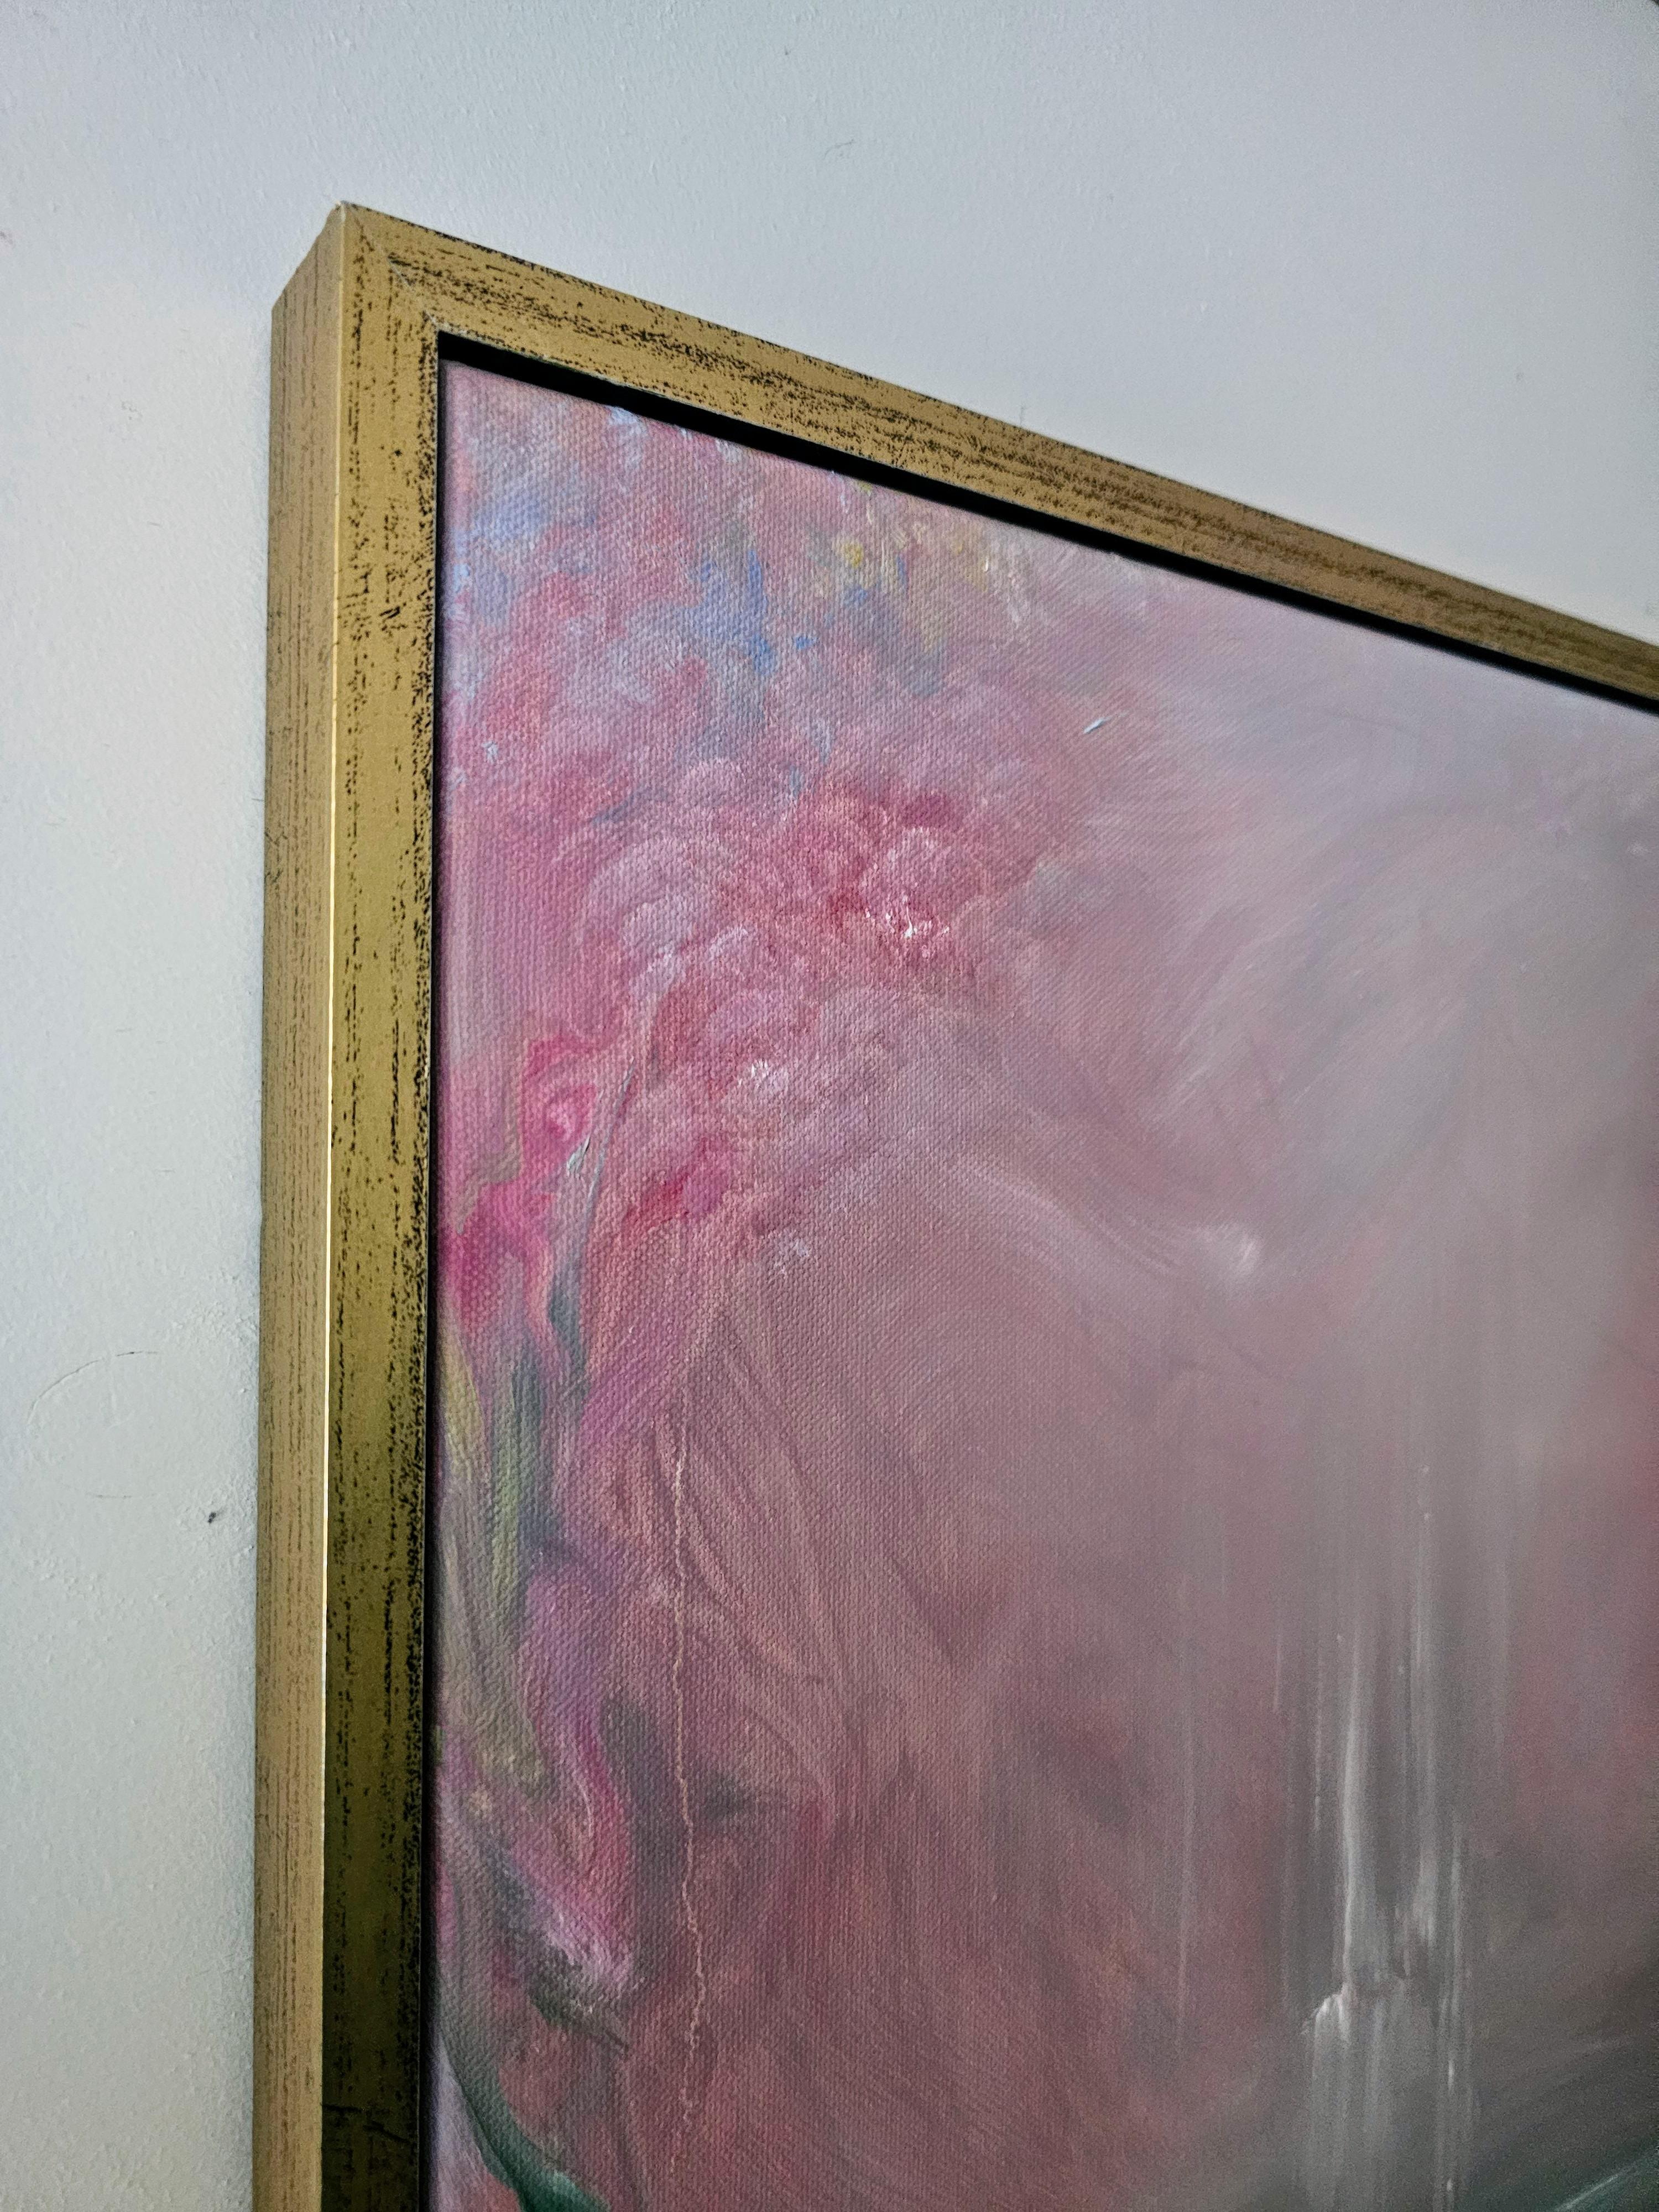 Aquarelle rose - Peinture de nature florale abstraite encadrée - Impressionnisme abstrait Painting par Jennifer L. Baker